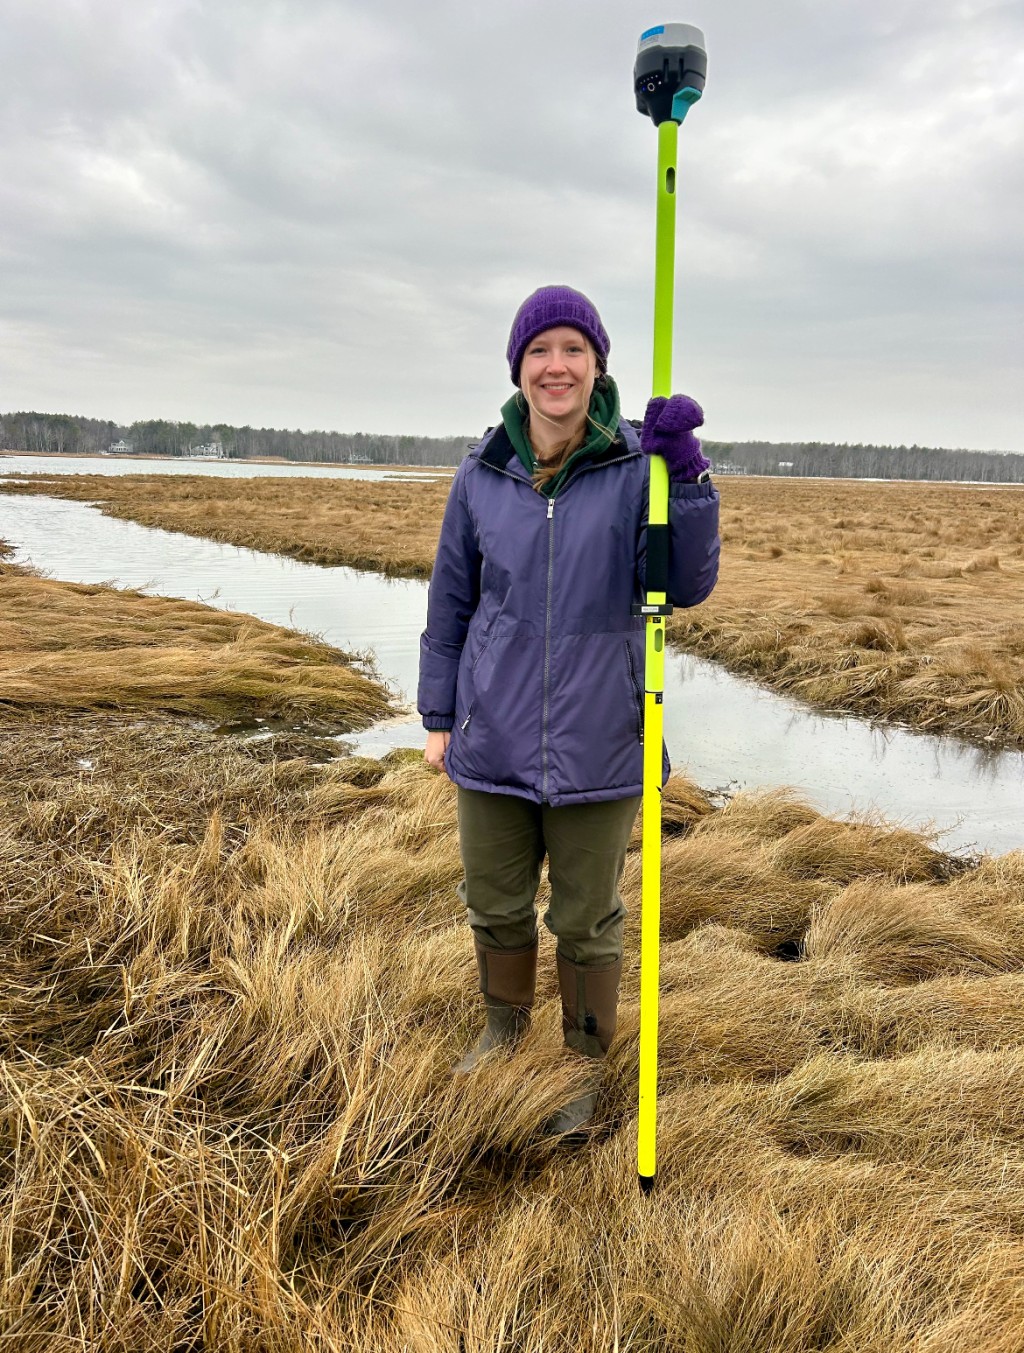 DeWater surveys salt marshes